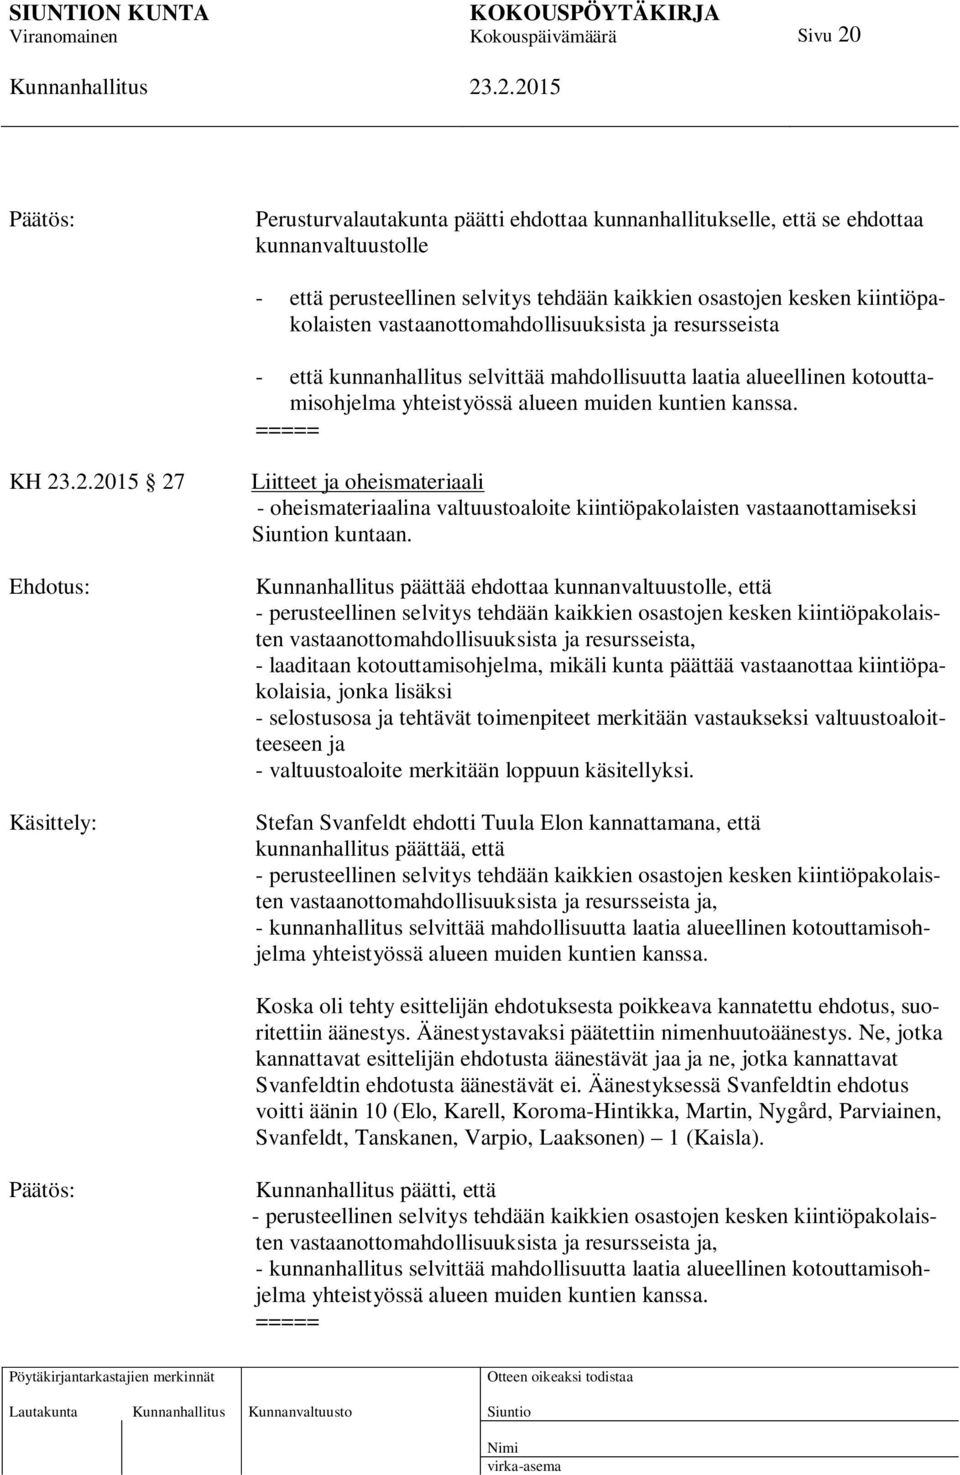 ===== KH 27 Käsittely: Liitteet ja oheismateriaali - oheismateriaalina valtuustoaloite kiintiöpakolaisten vastaanottamiseksi n kuntaan.